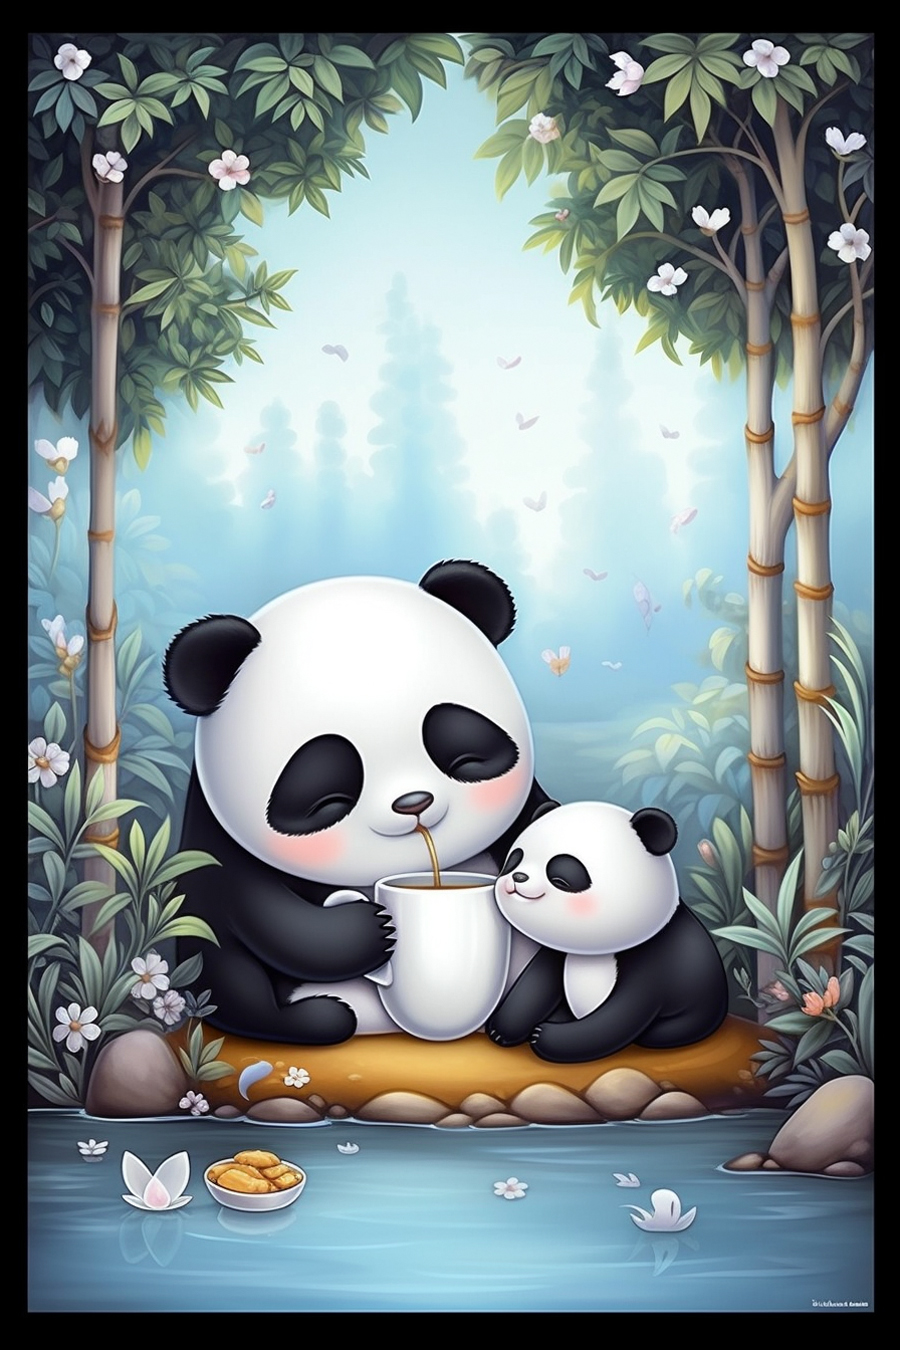 A panda bear and a panda cub drinking tea.